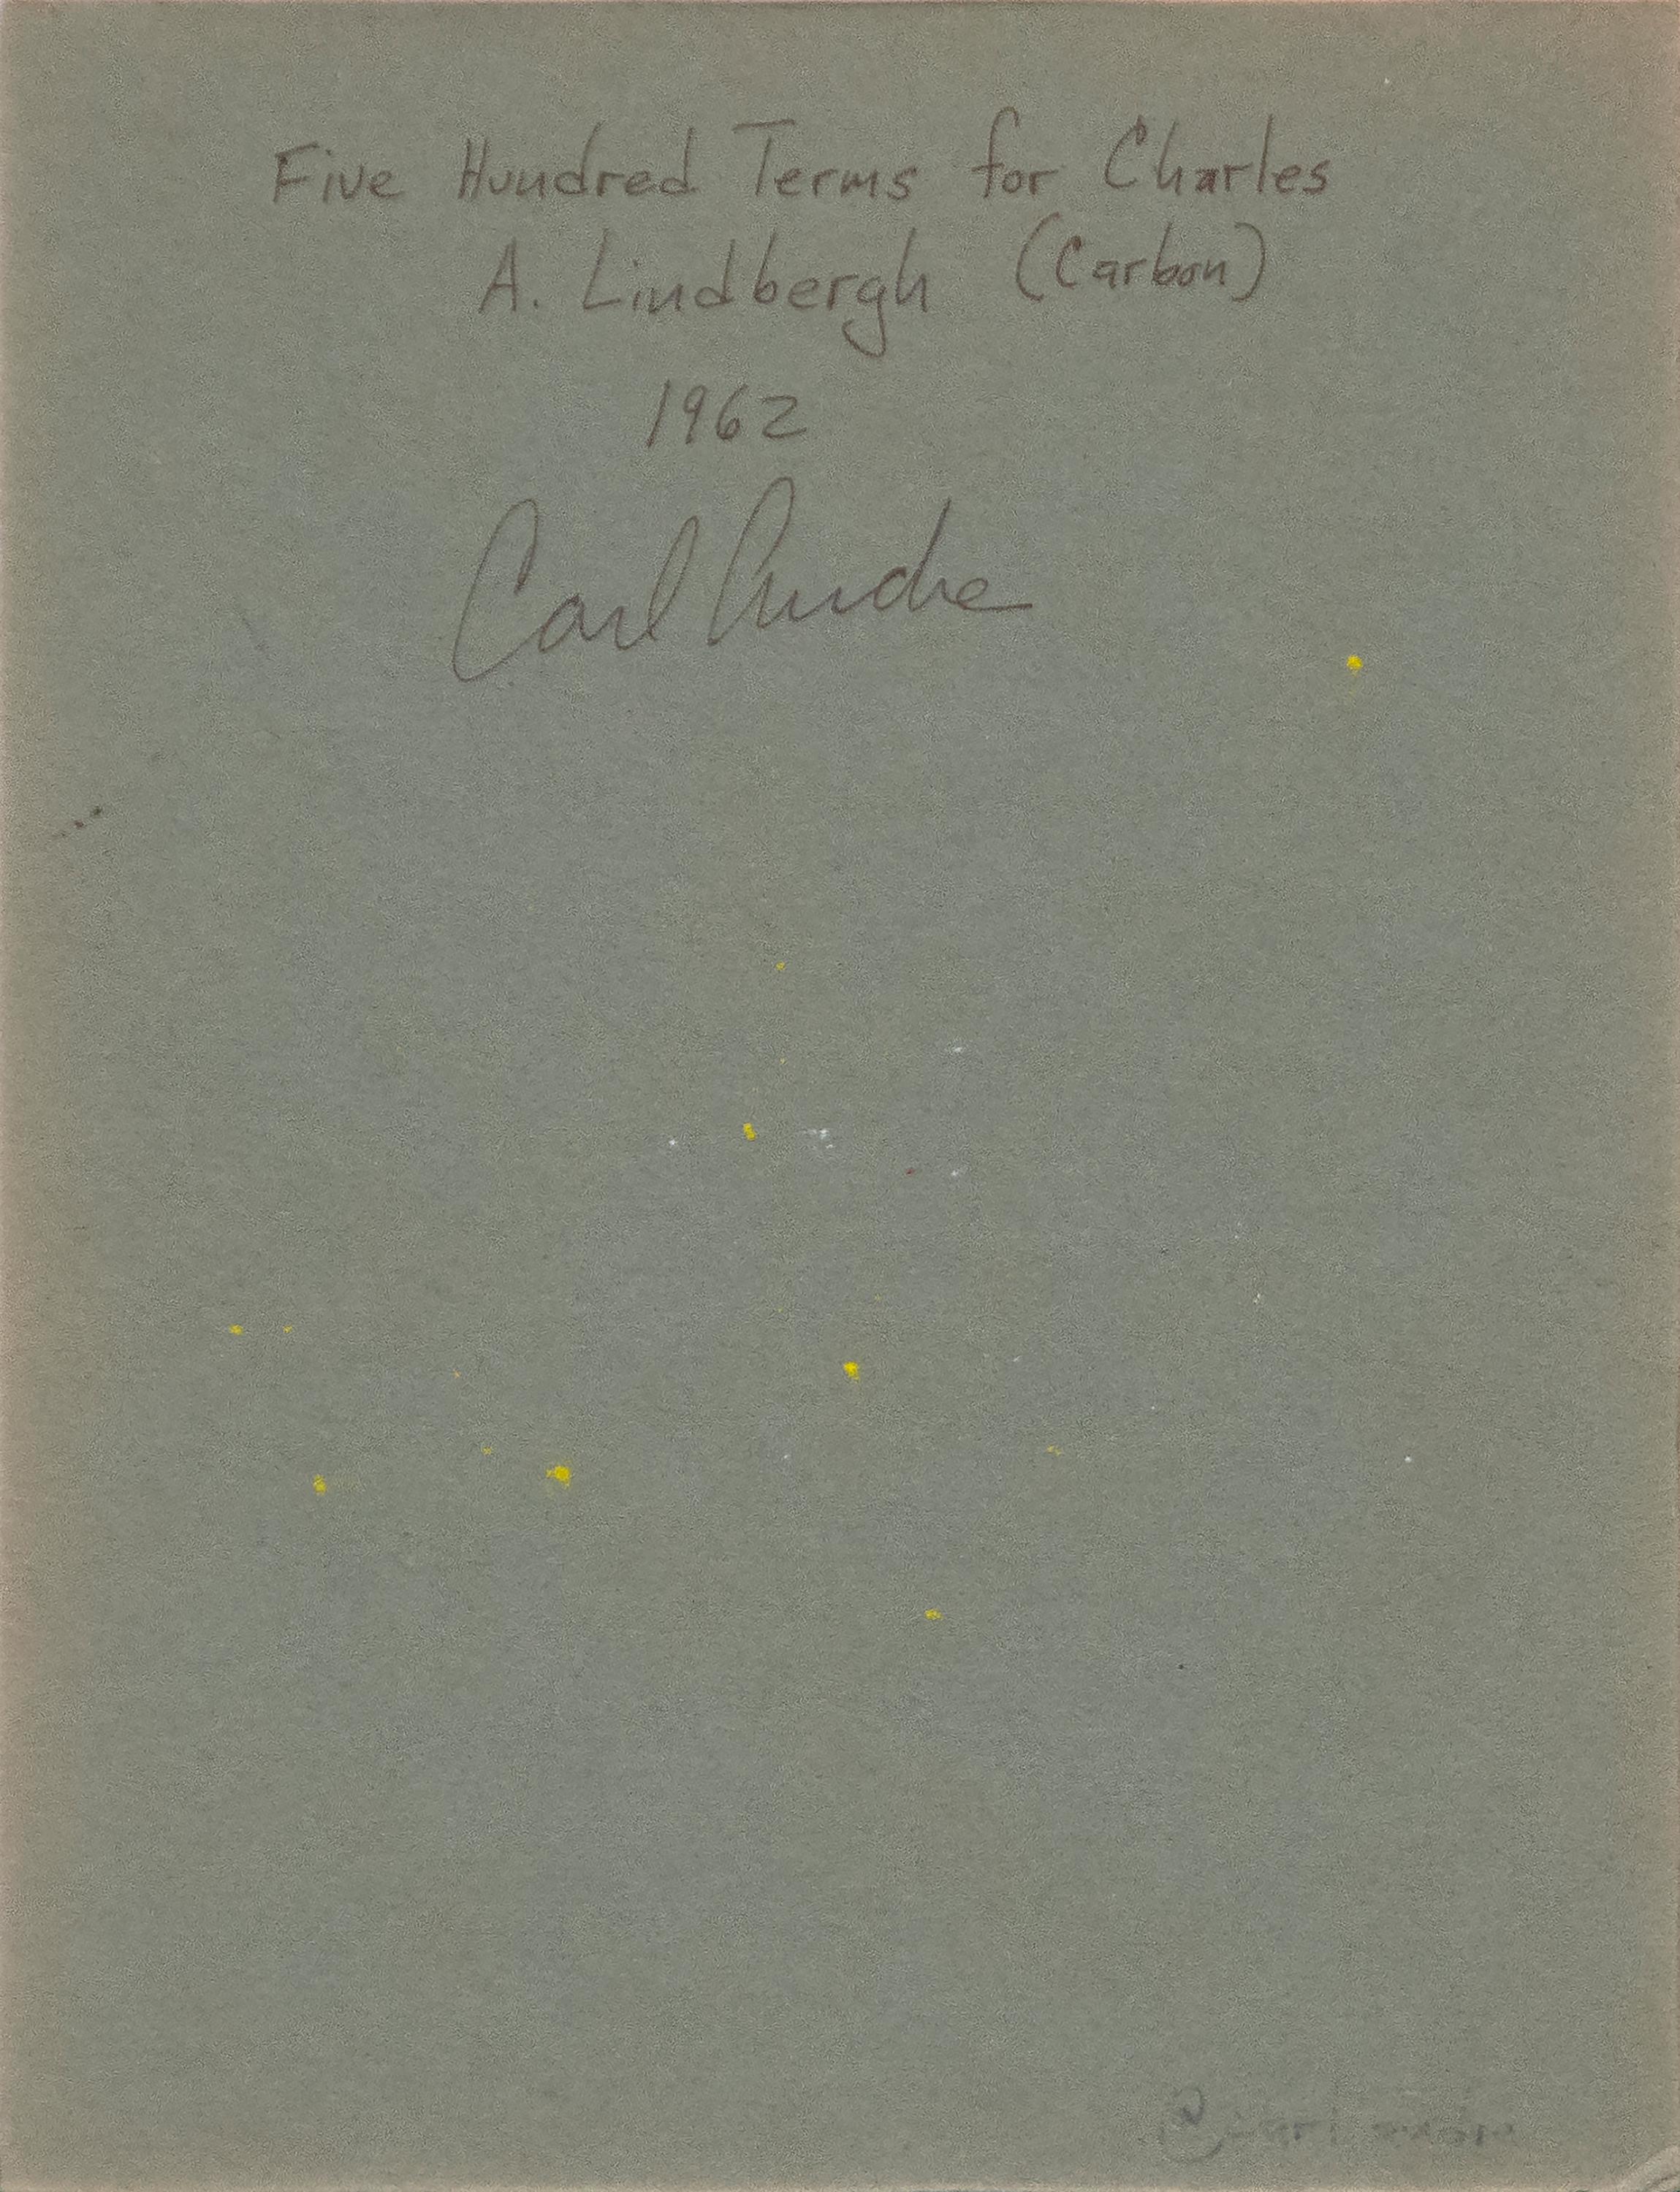 Conditions de cinq cents exemplaires pour Charles A. Lindbergh en vente 5